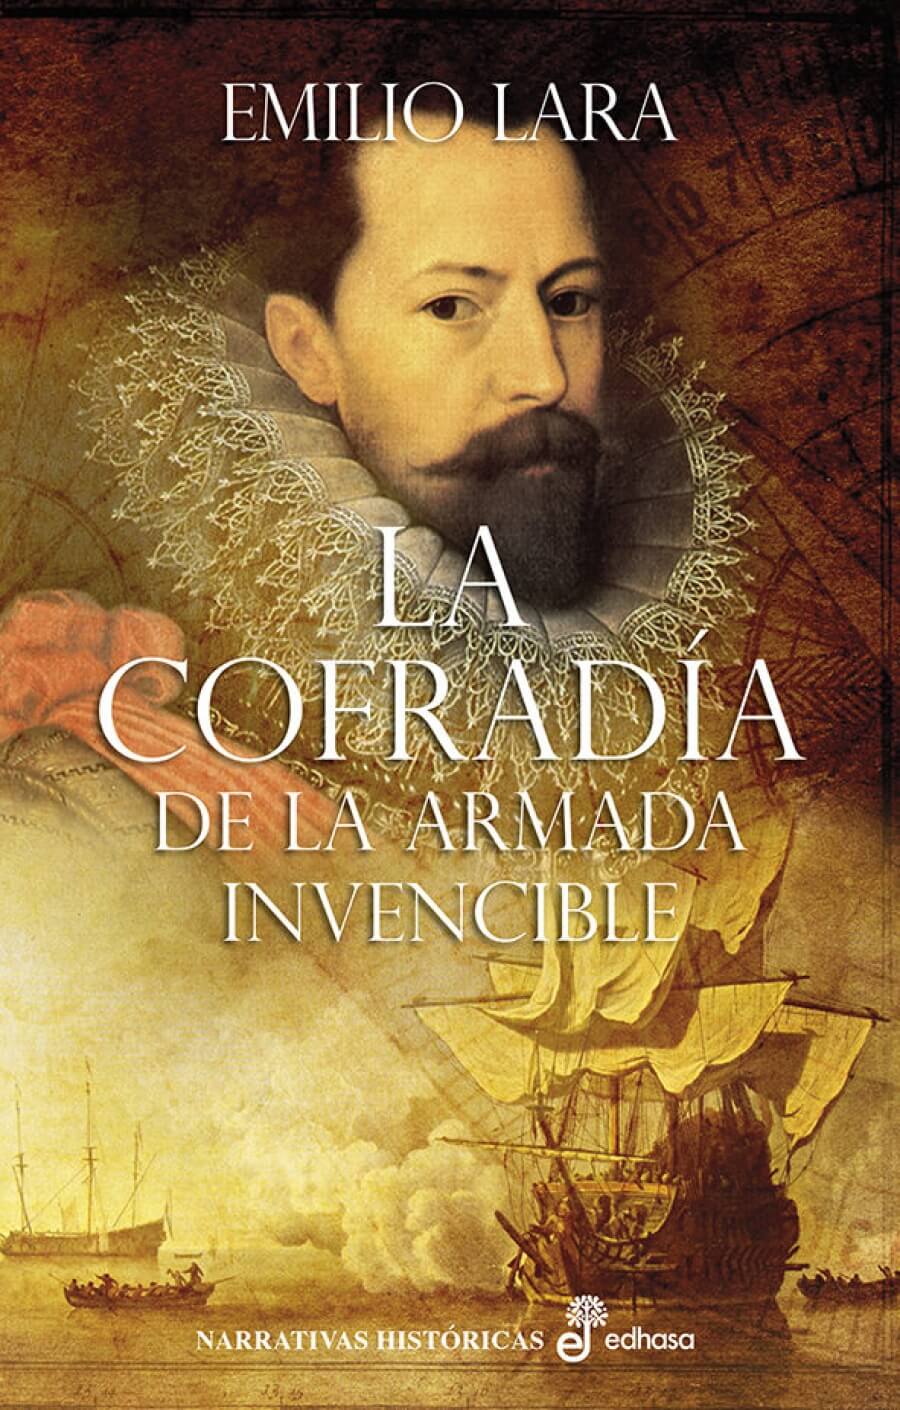 Emilio Lara combina Historia, aventura y entretenimiento en La Cofradía de la Armada Invencible